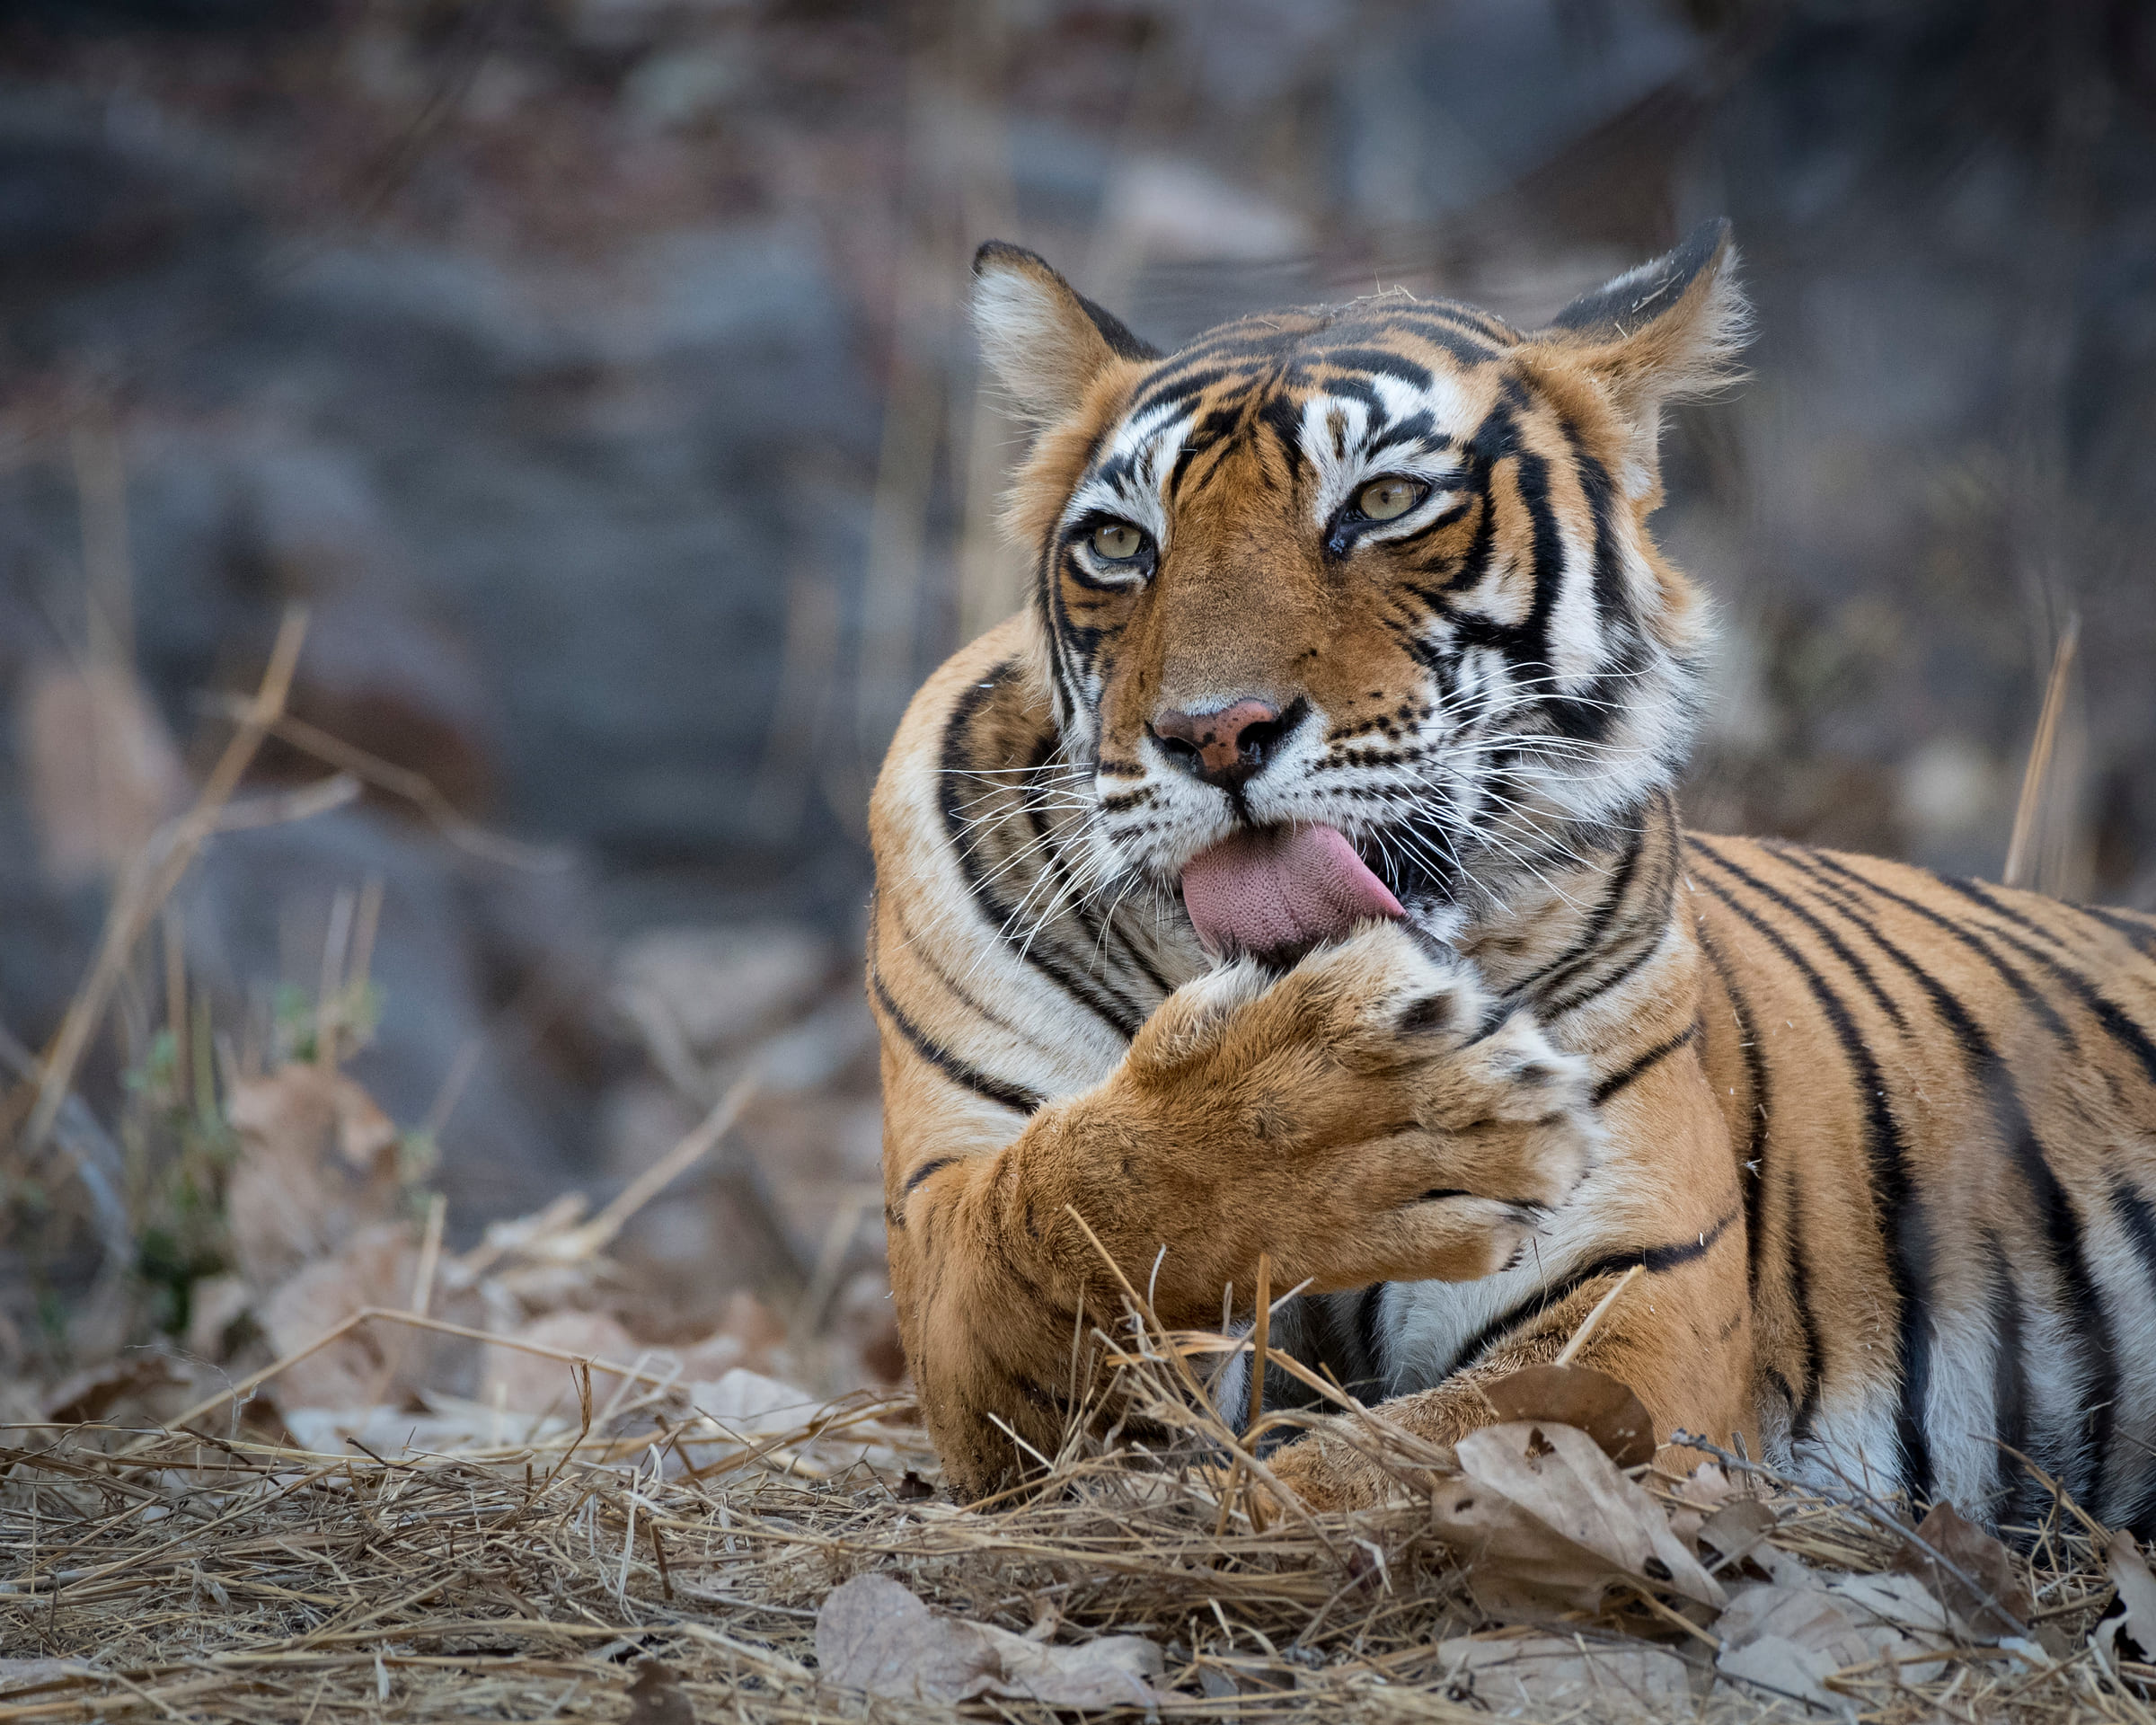 Tiger leckt seine Pfote